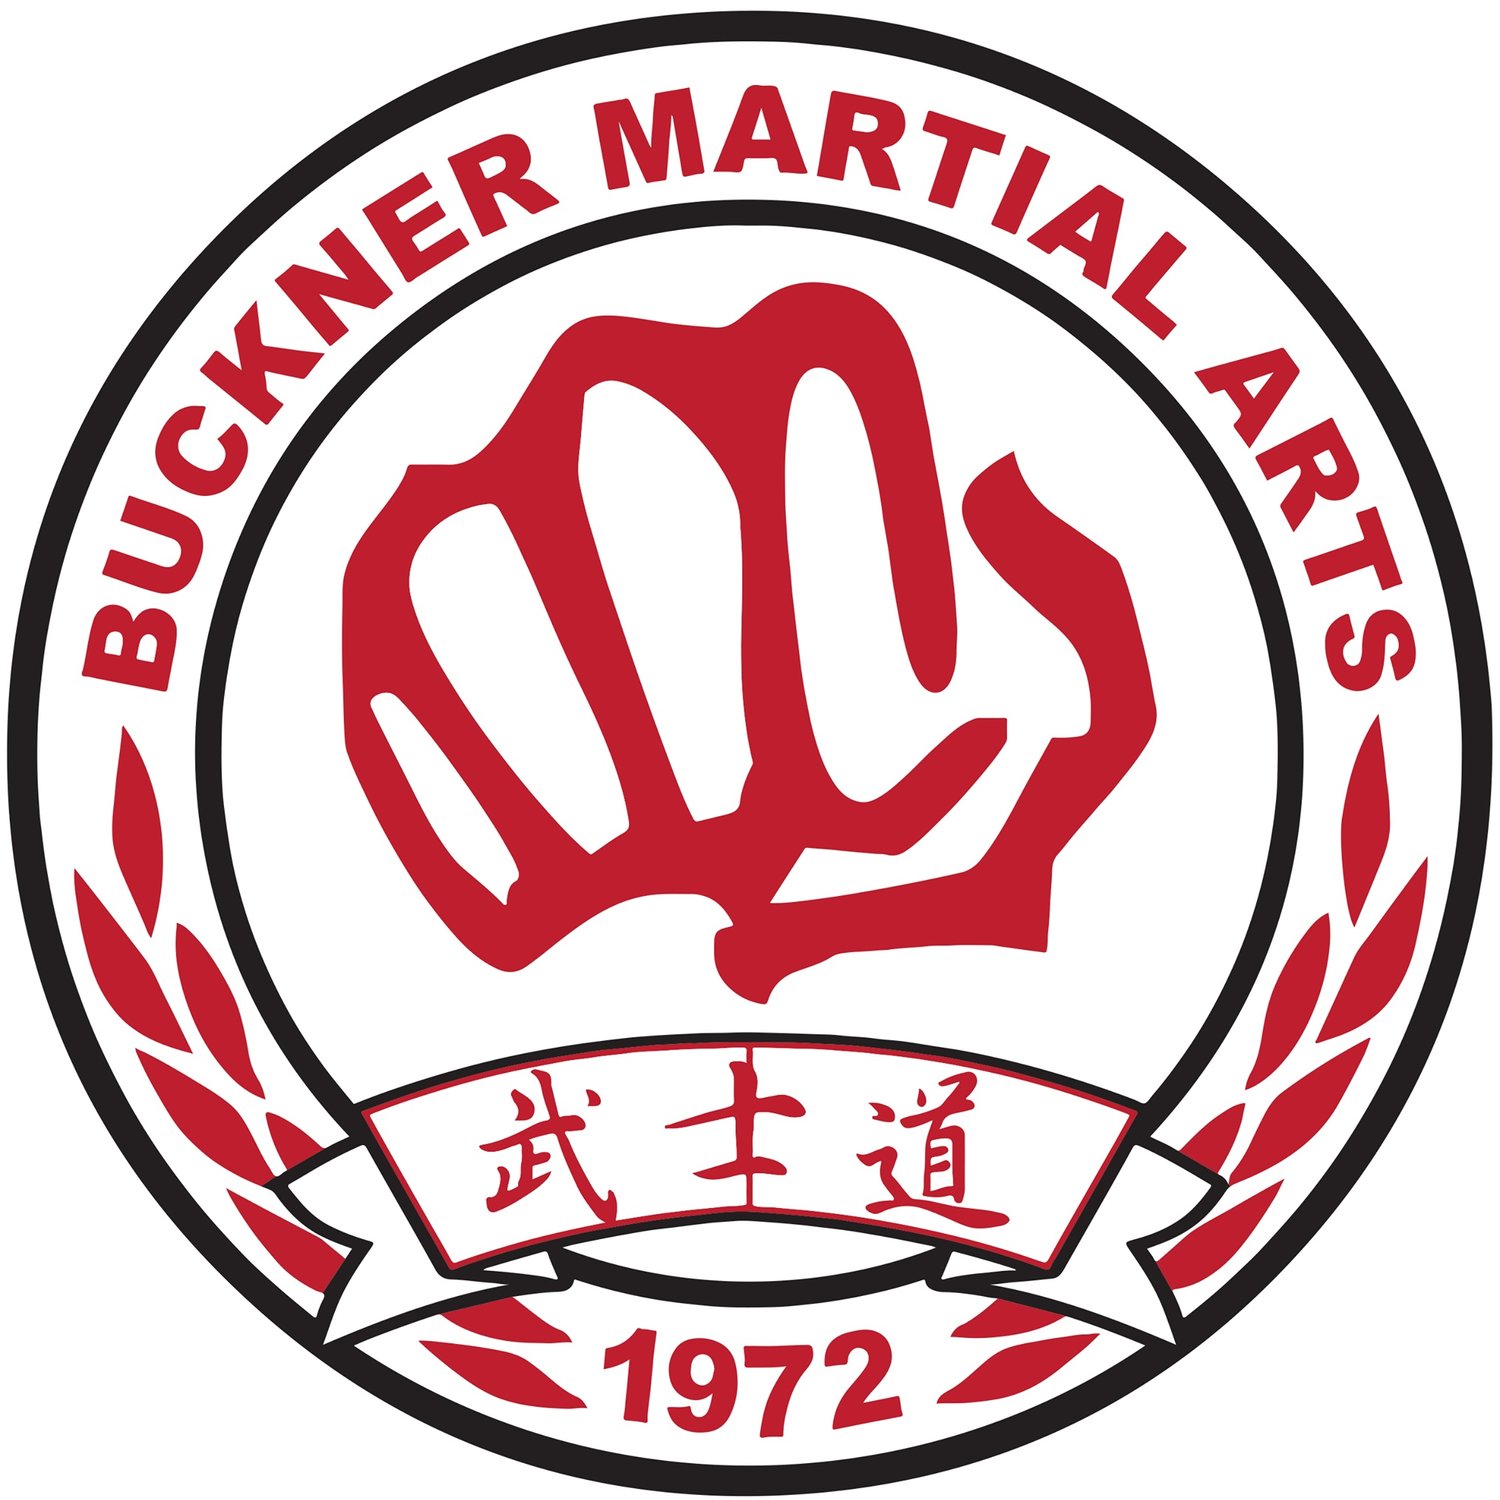 Buckner Martial Arts